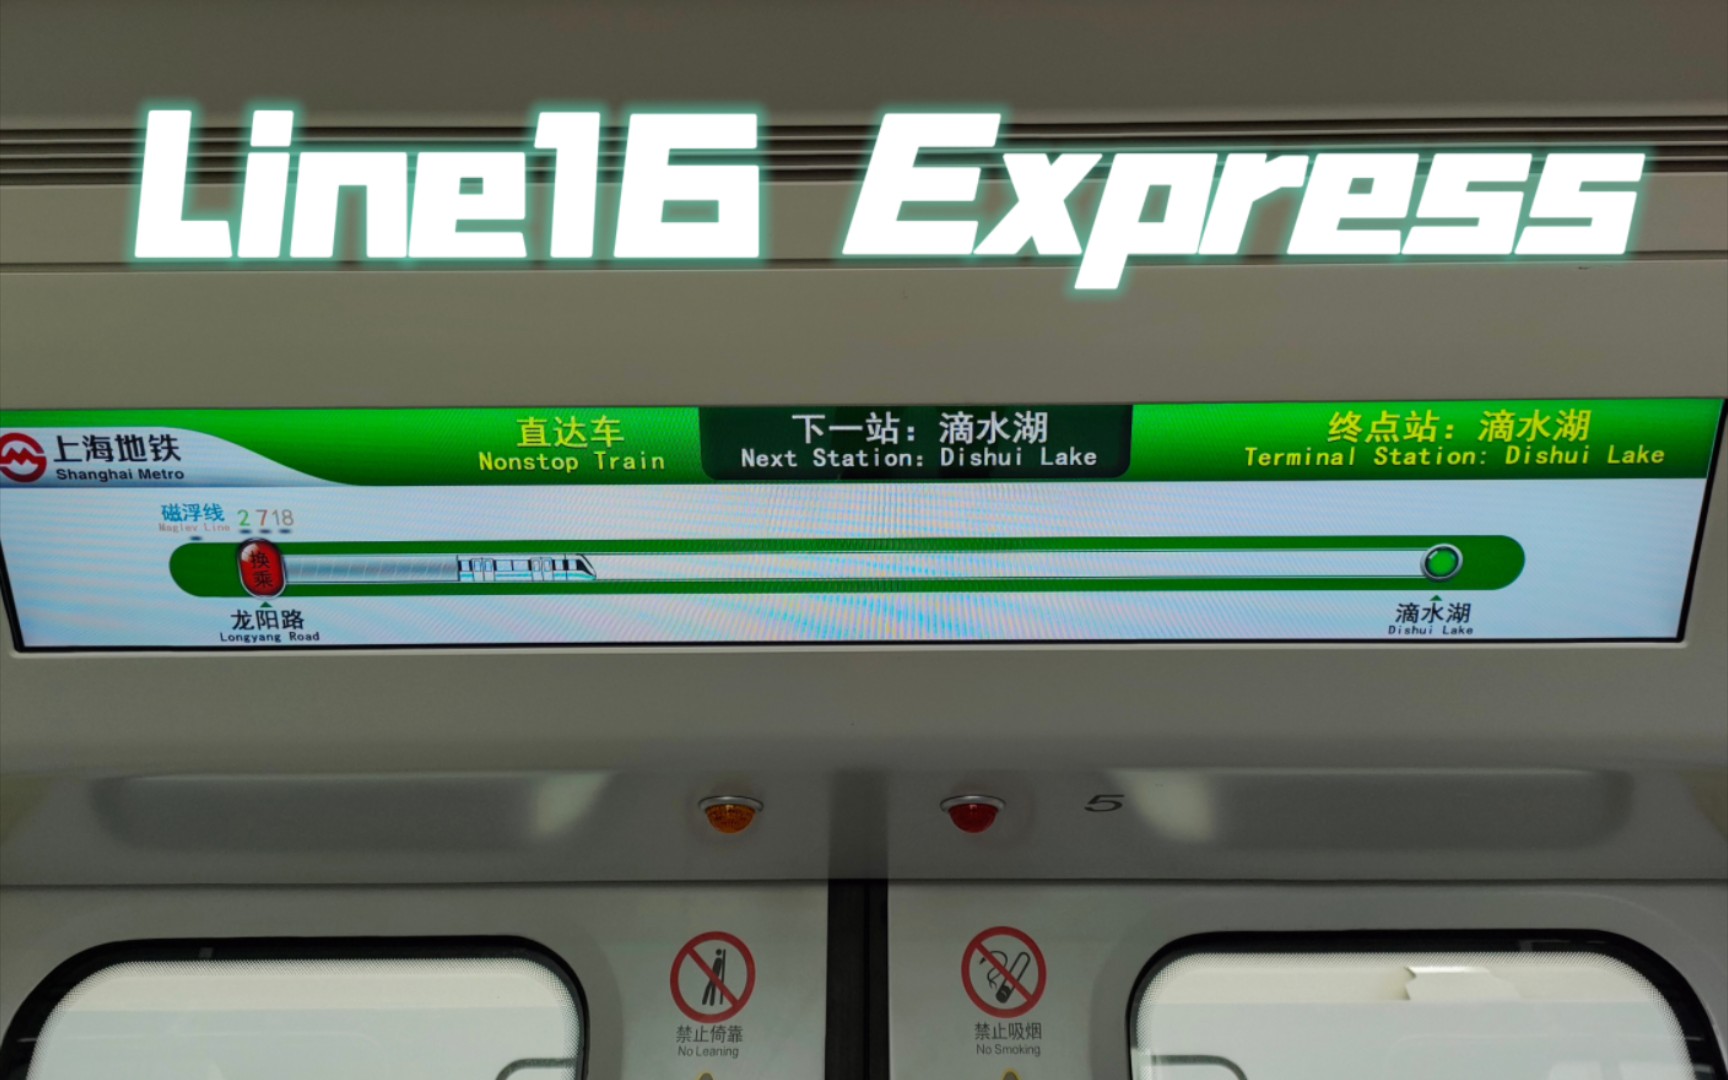 【上海地铁】有高铁那味了？16号线直达特快列车乘坐体验